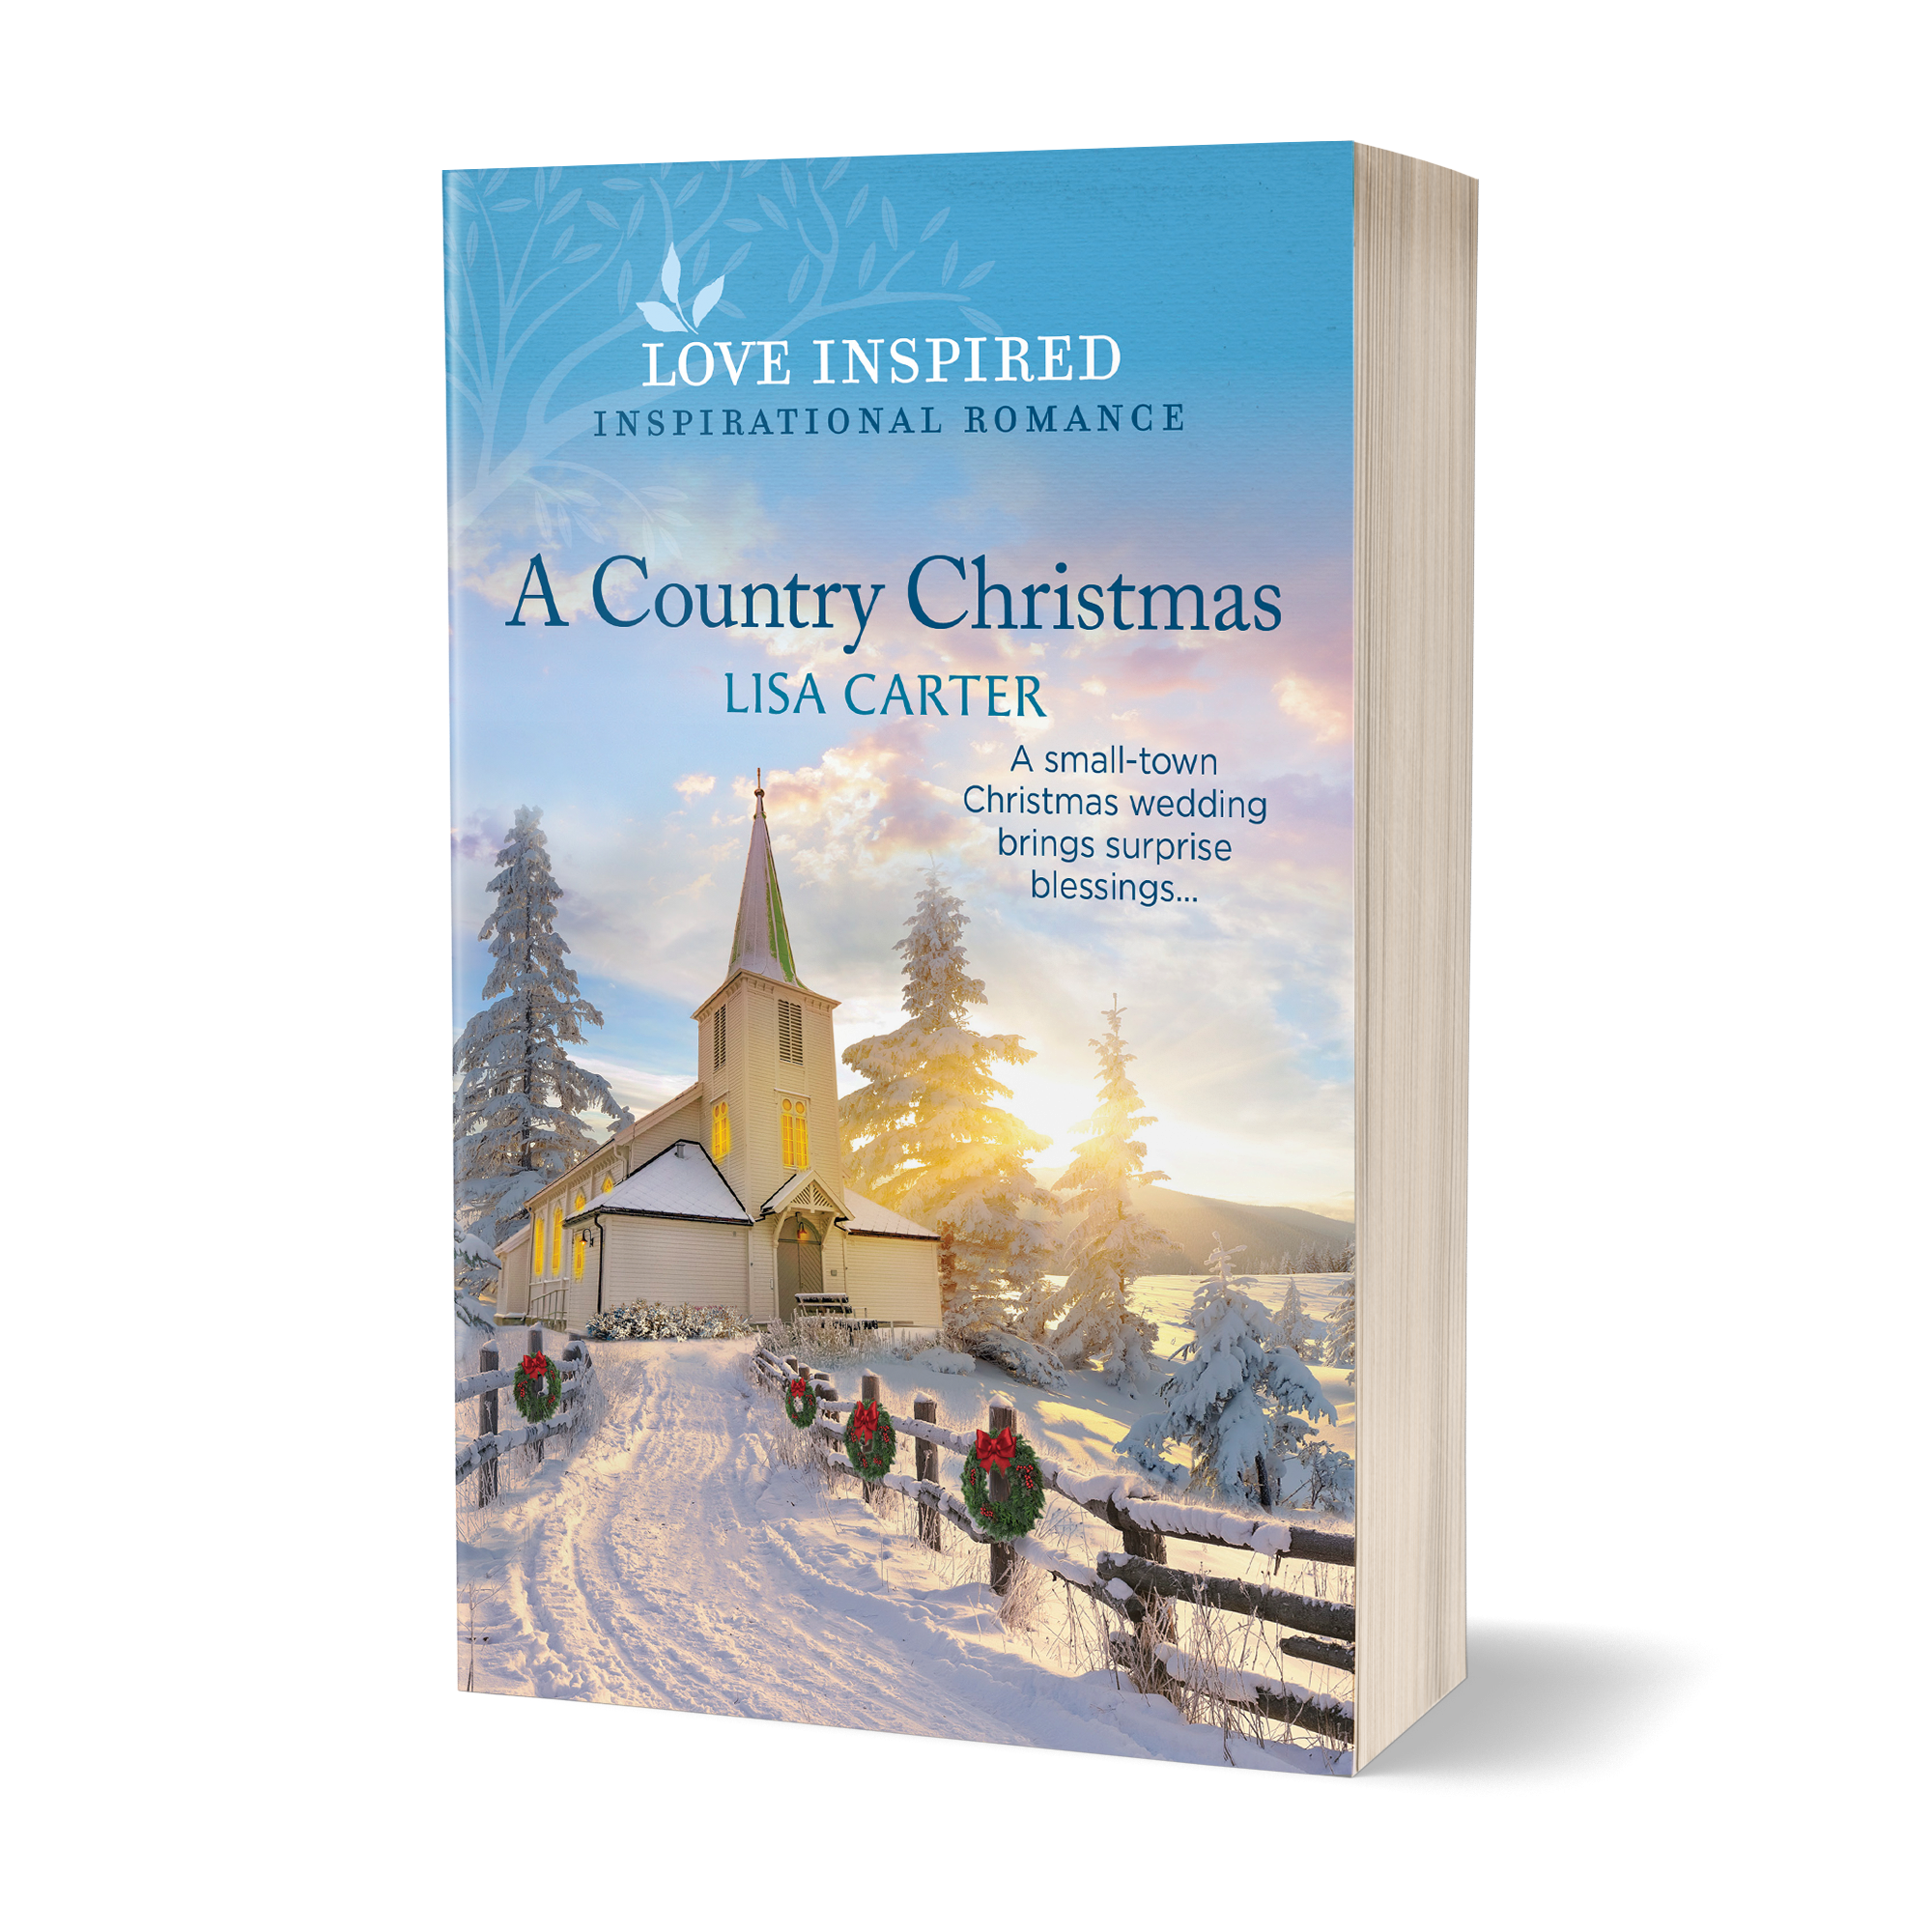  A Country Christmas - Lisa Carter 